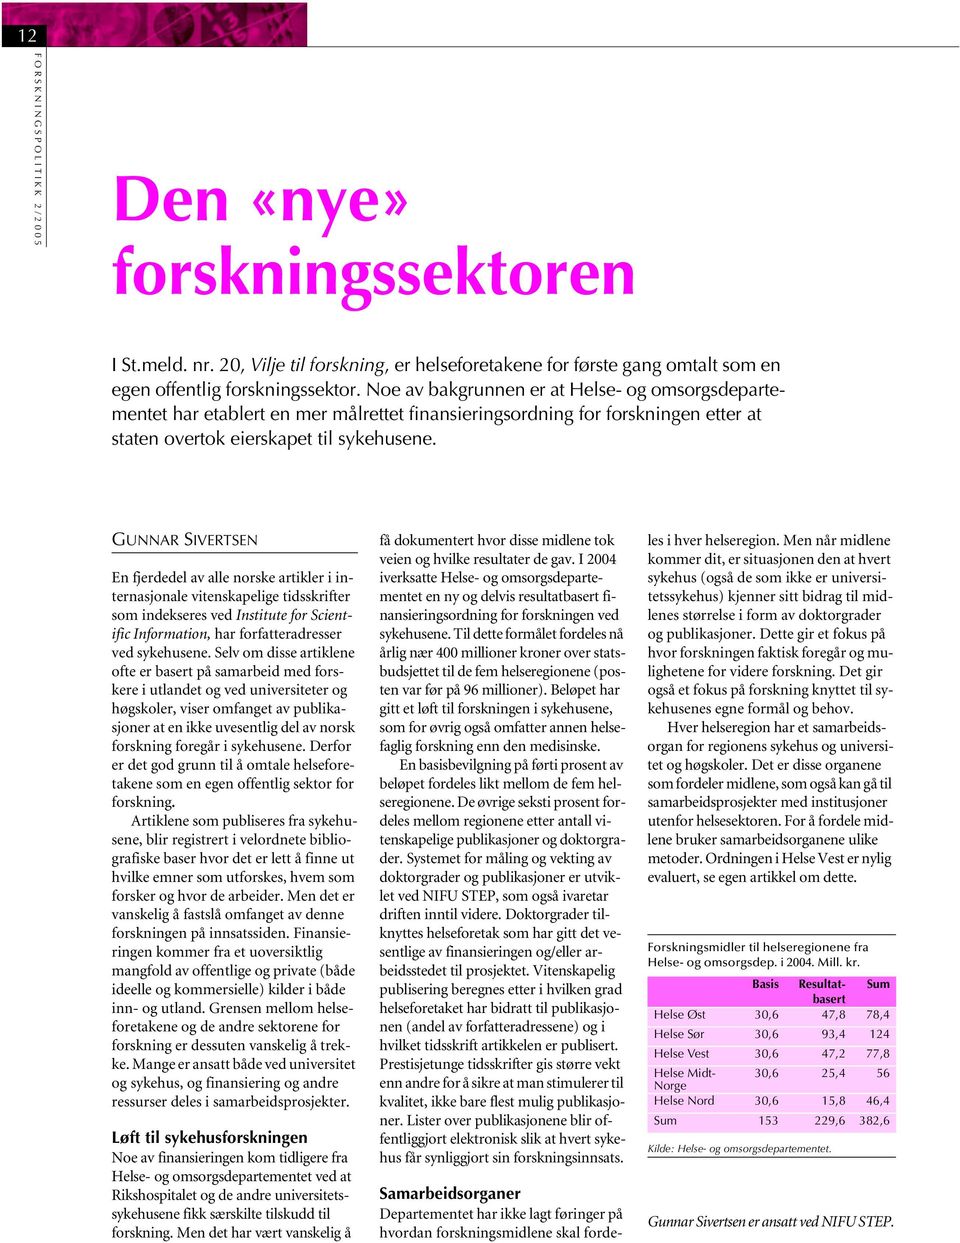 GUNNAR SIVERTSEN En fjerdedel av alle norske artikler i internasjonale vitenskapelige tidsskrifter som indekseres ved Institute for Scientific Information, har forfatteradresser ved sykehusene.